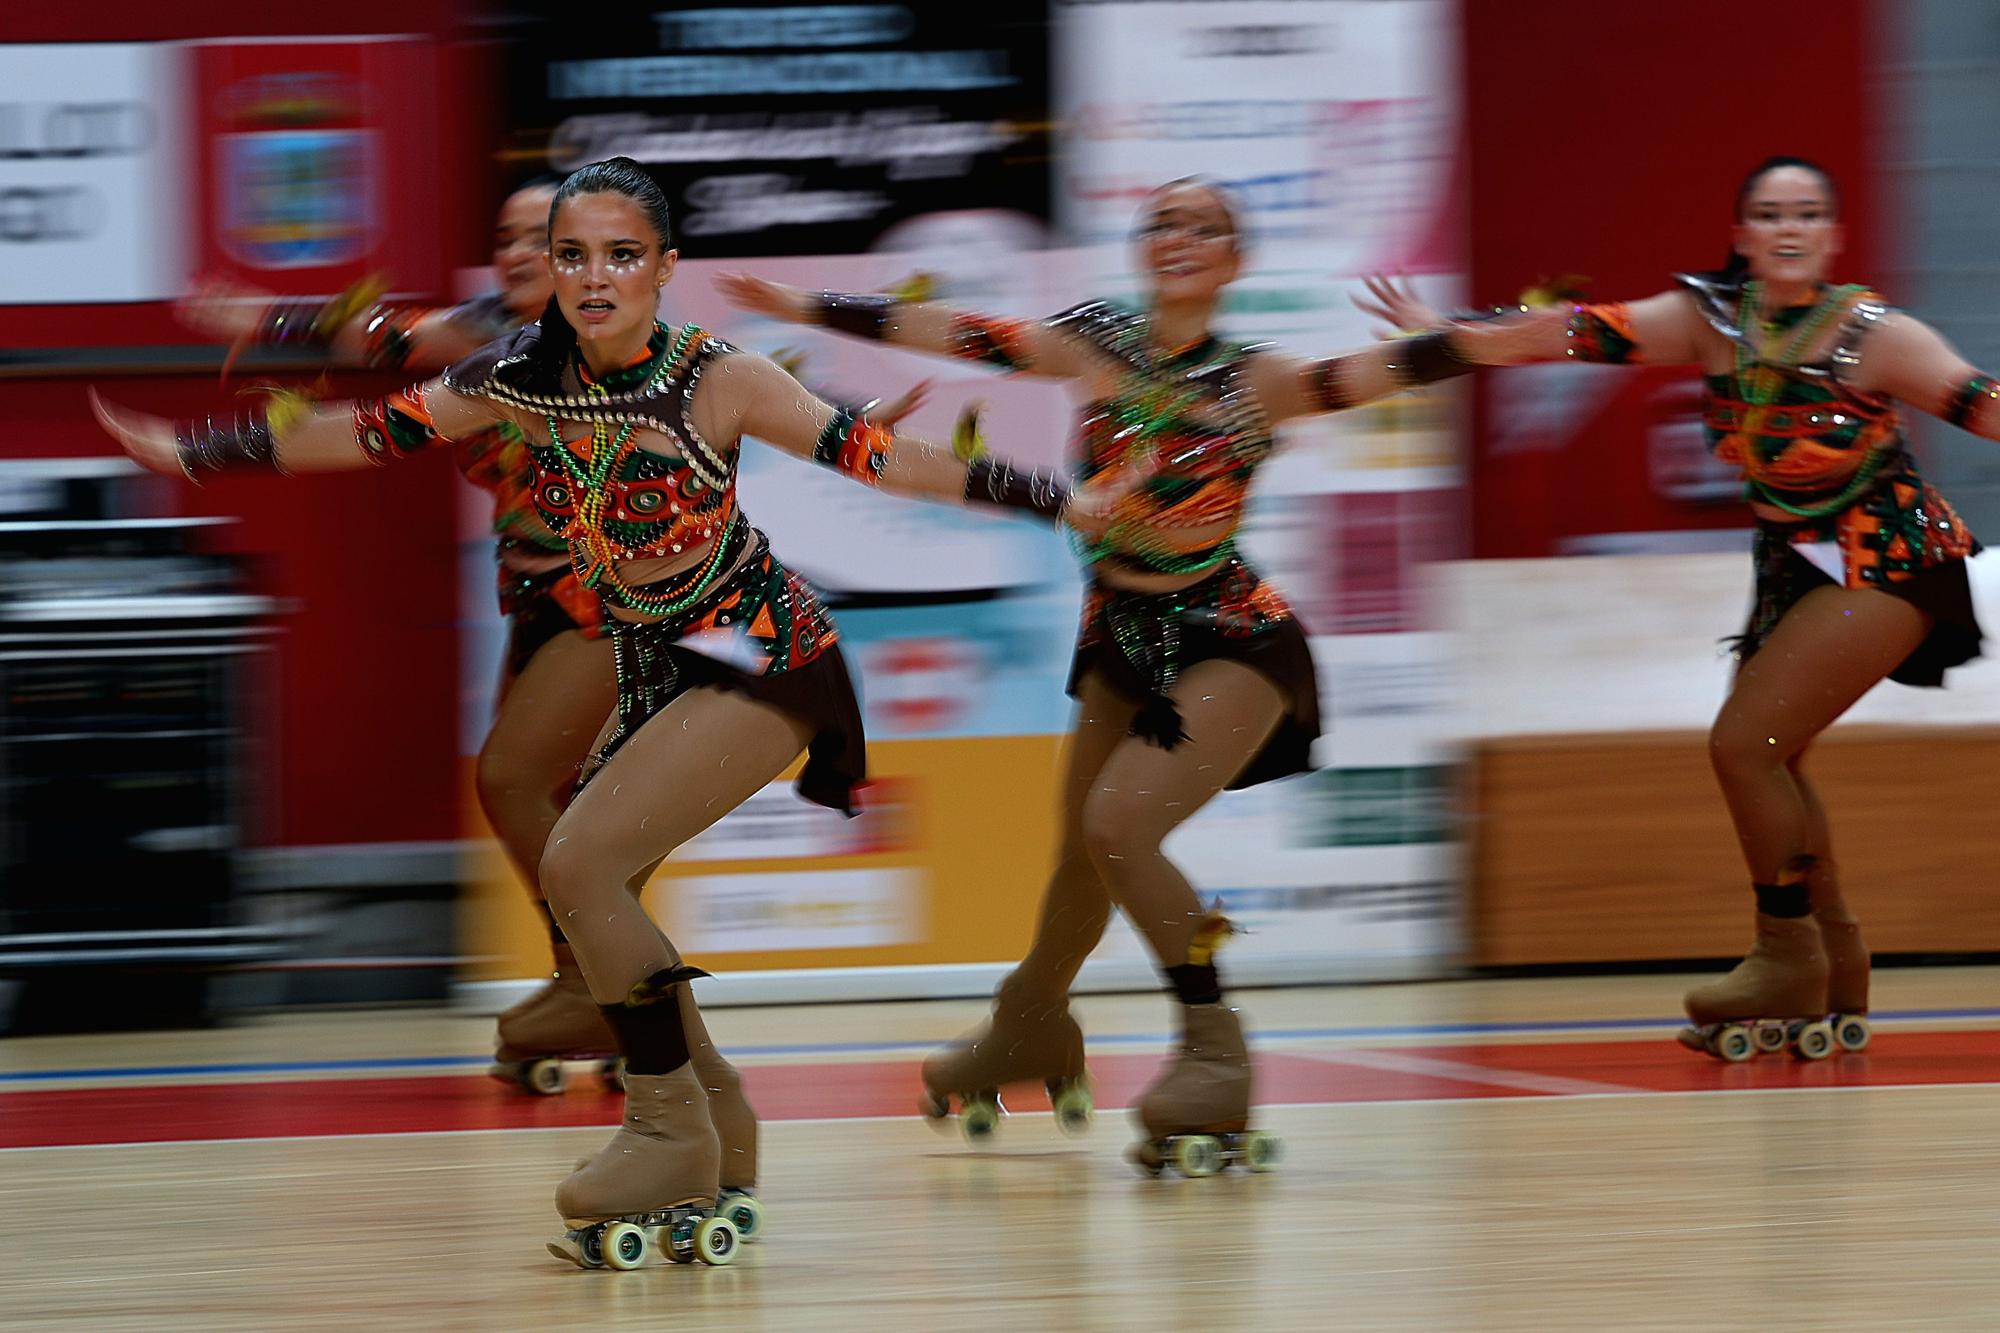 El certamen Cidade de Vigo de patinaje, en imágenes